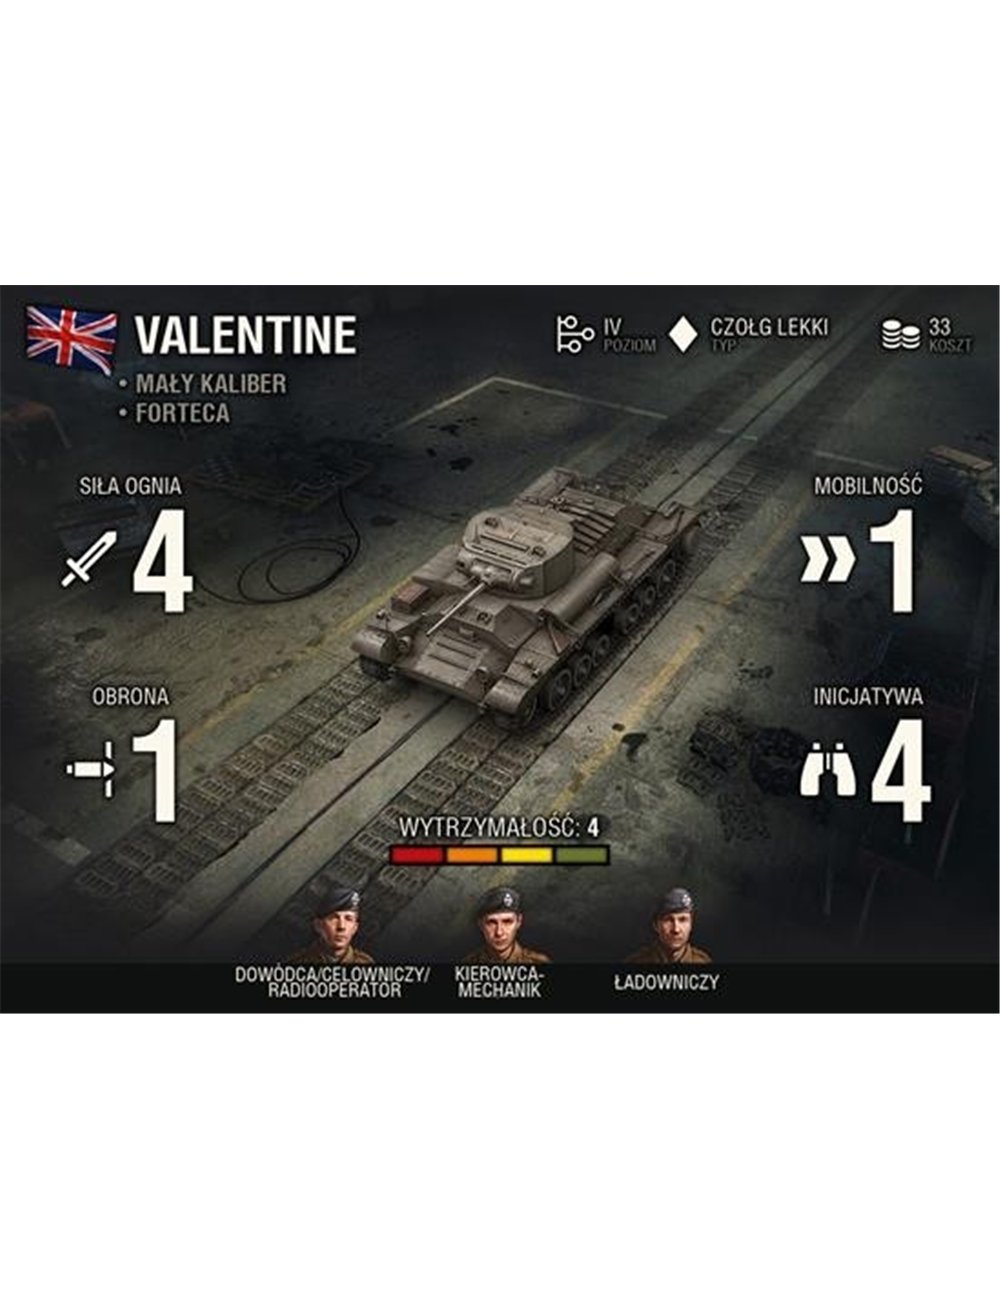 World of Tanks Expansion: Valentine wersja PL